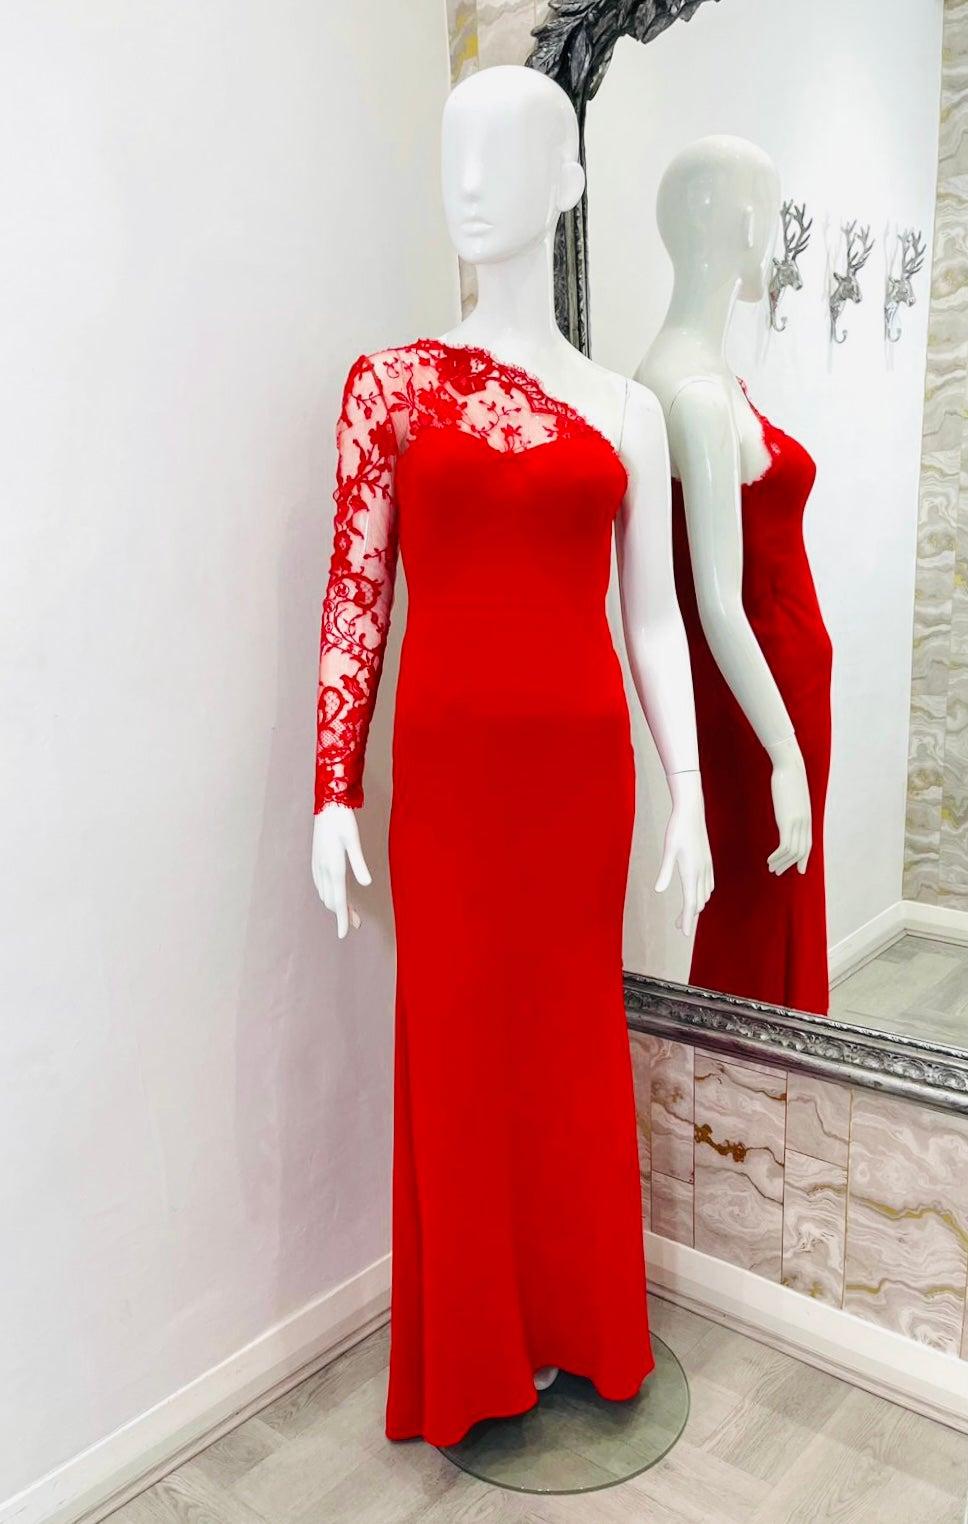 Alexander McQueen - Robe asymétrique en dentelle

La robe rouge à une épaule est ornée d'une dentelle florale transparente qui s'enroule de façon asymétrique autour d'un col montant festonné. Une bande ton sur ton à la taille et une fente à l'ourlet